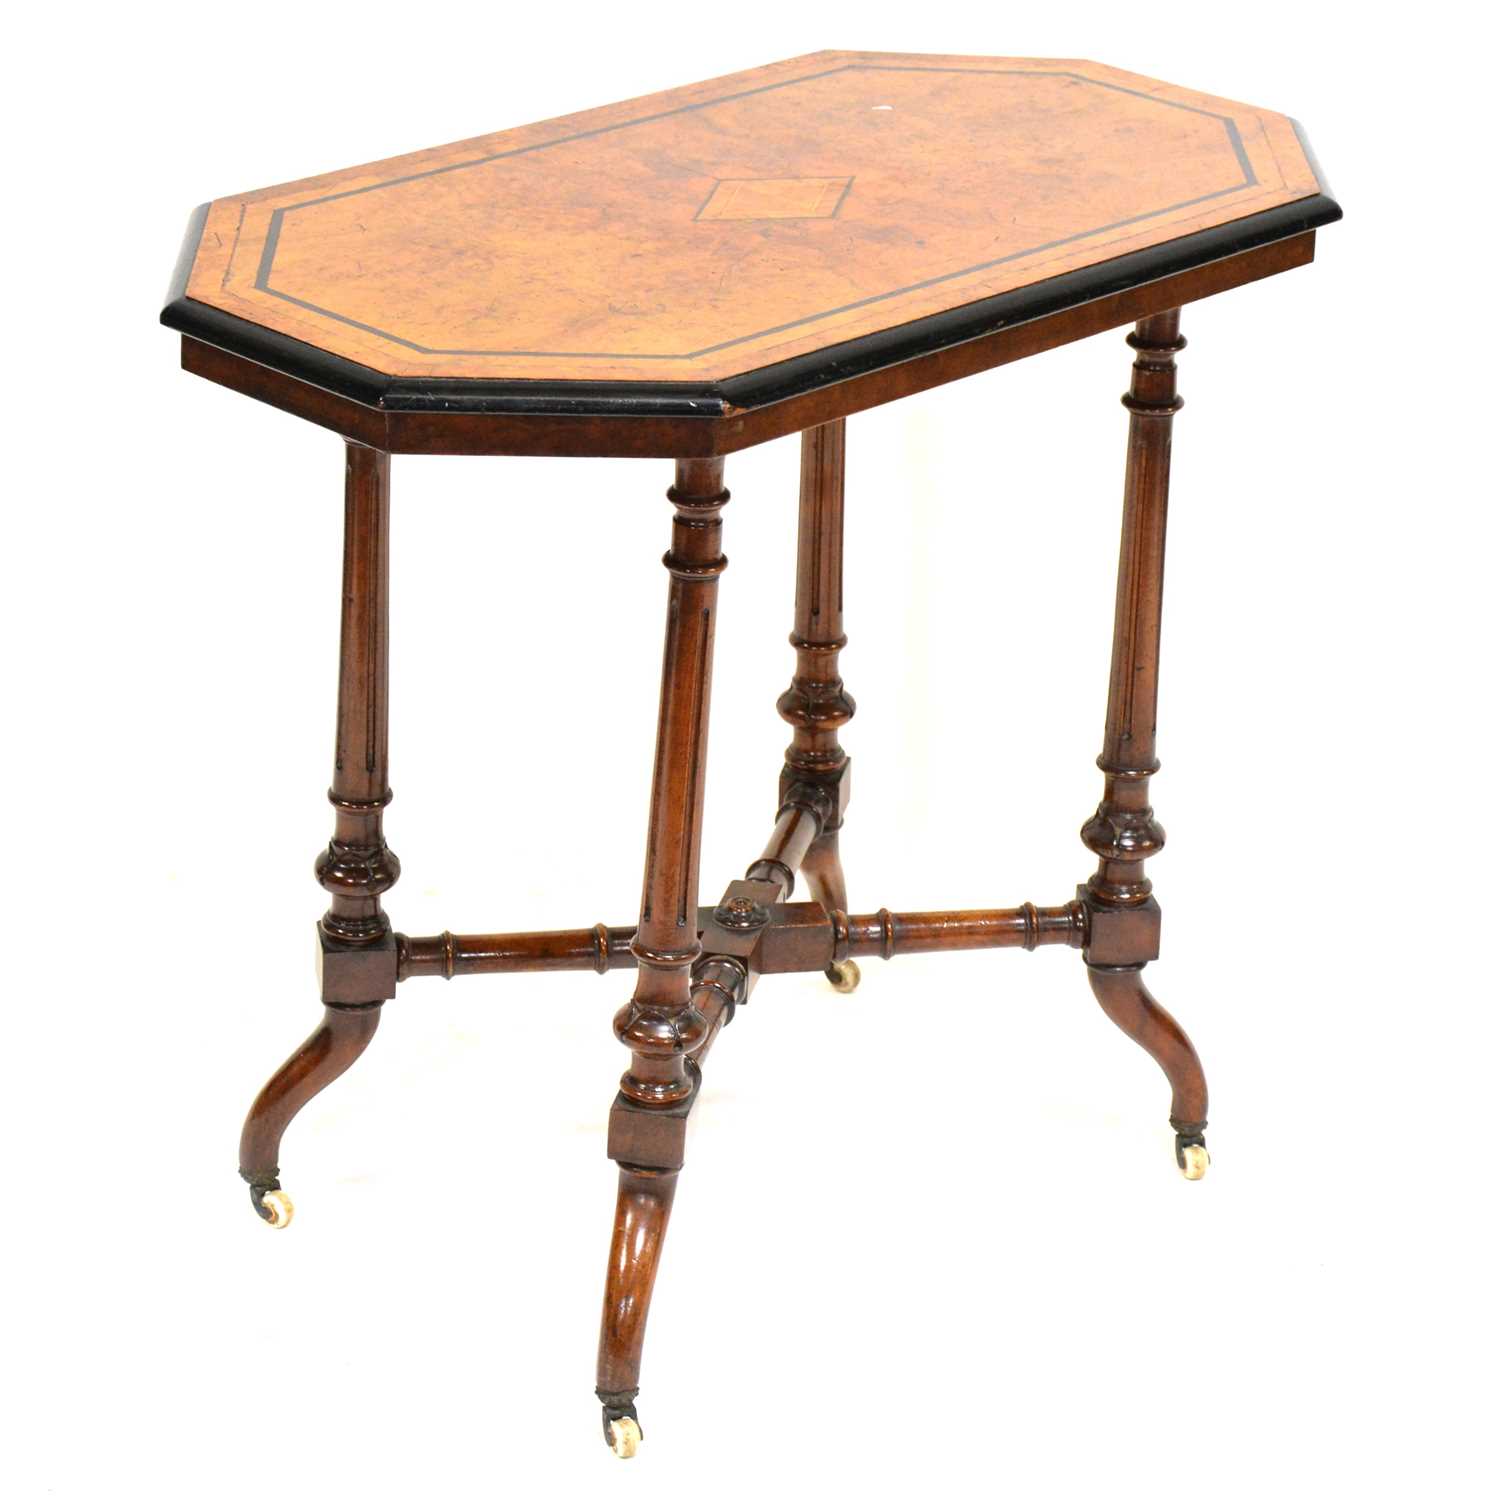 Victorian walnut and ebonised table,